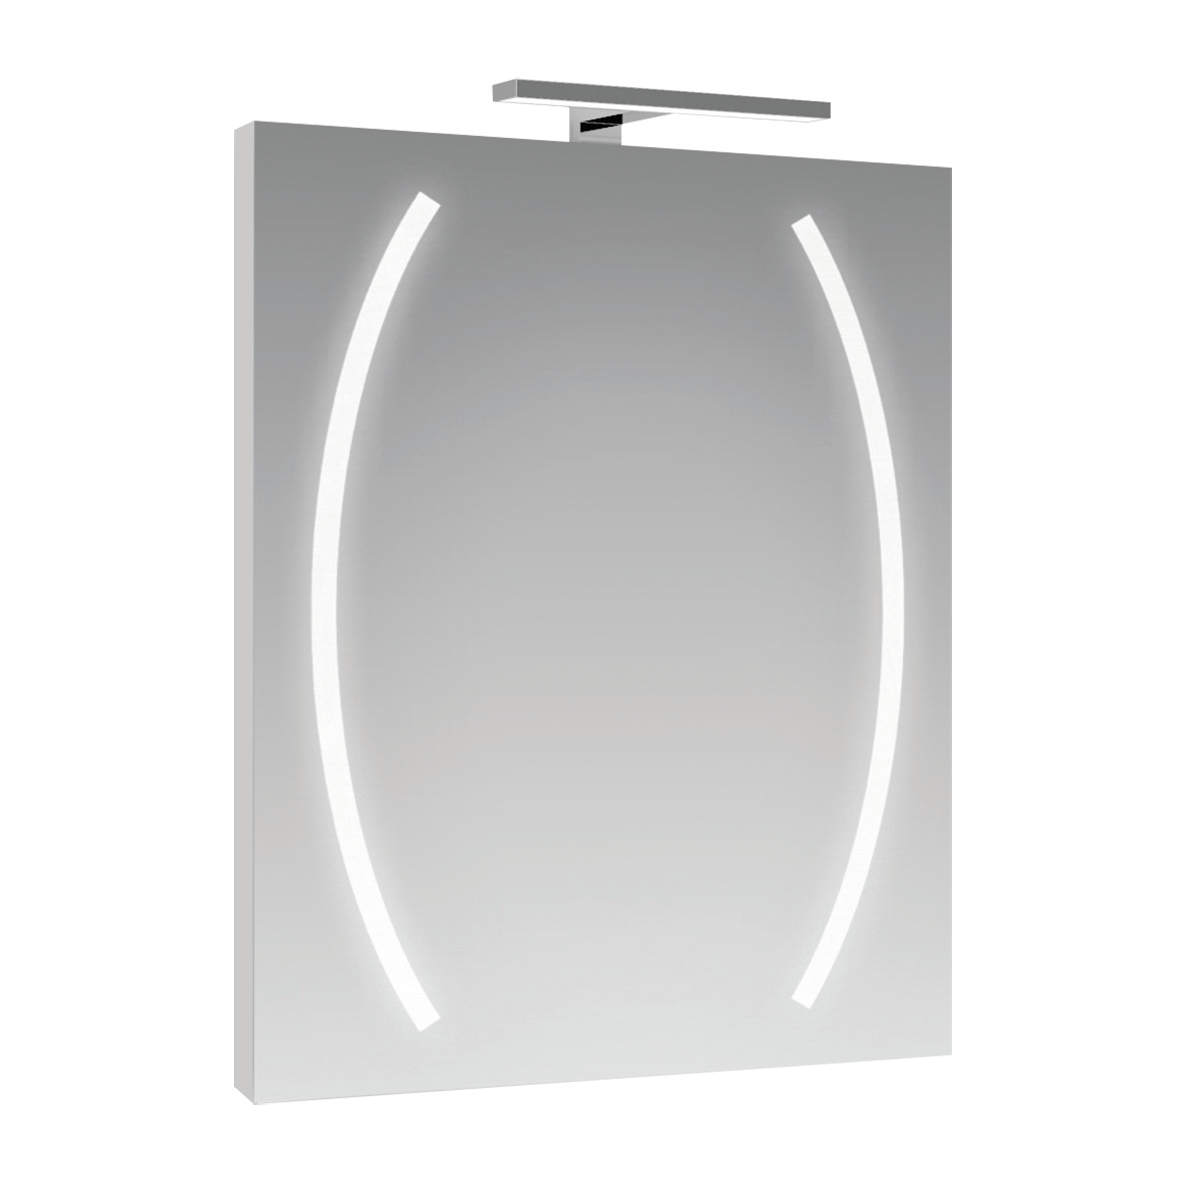 Specchio con illuminazione integrata completo di faretto bagno rettangolare Boomerang L 60 x H 80 cm - 1